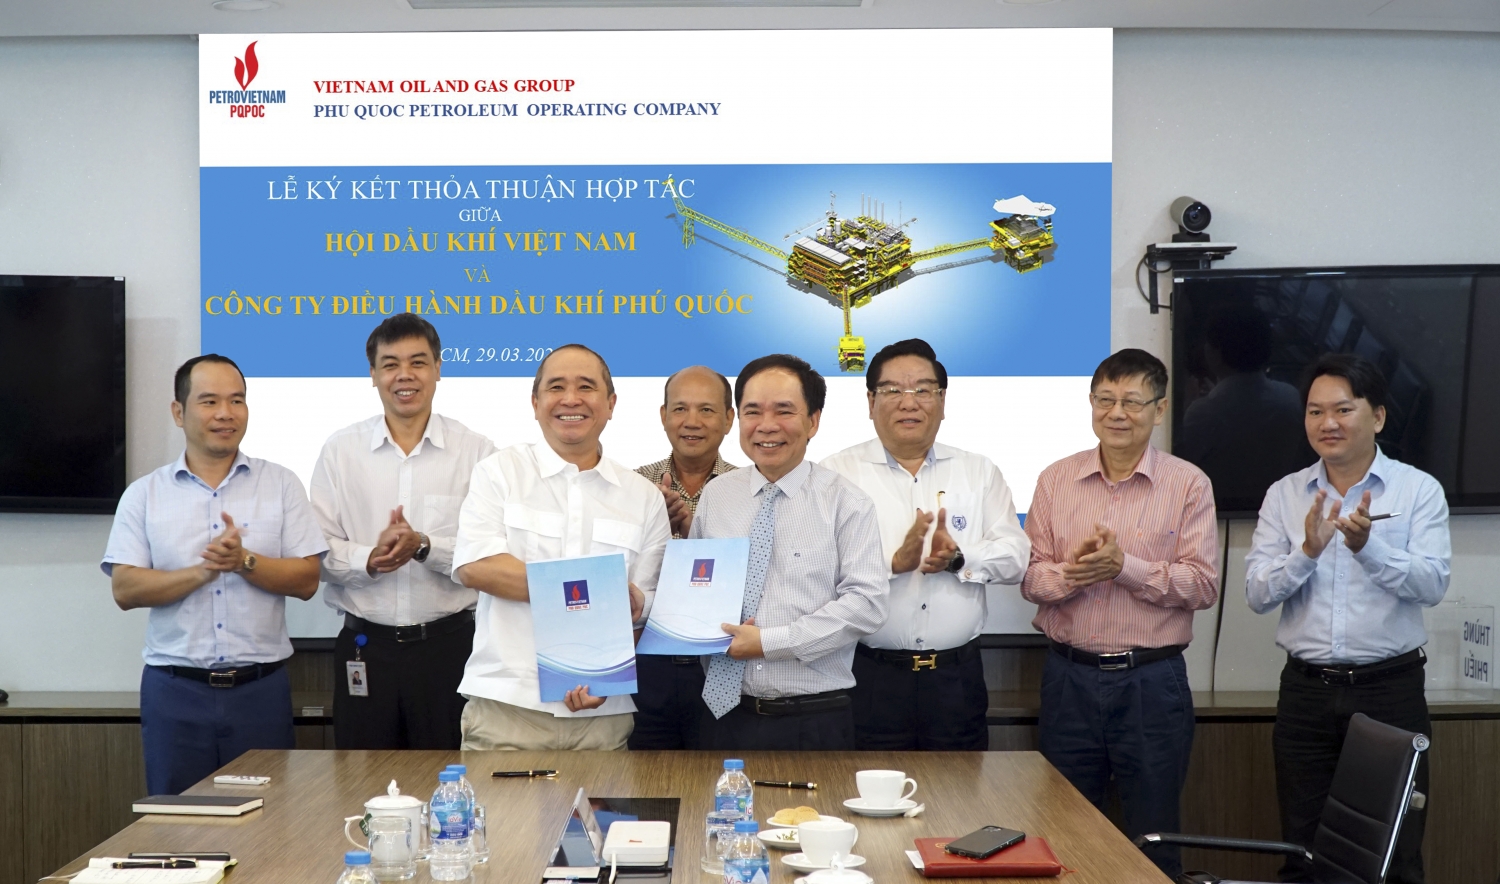 Hội Dầu khí Việt Nam và PQPOC ký kết thỏa thuận hợp tác